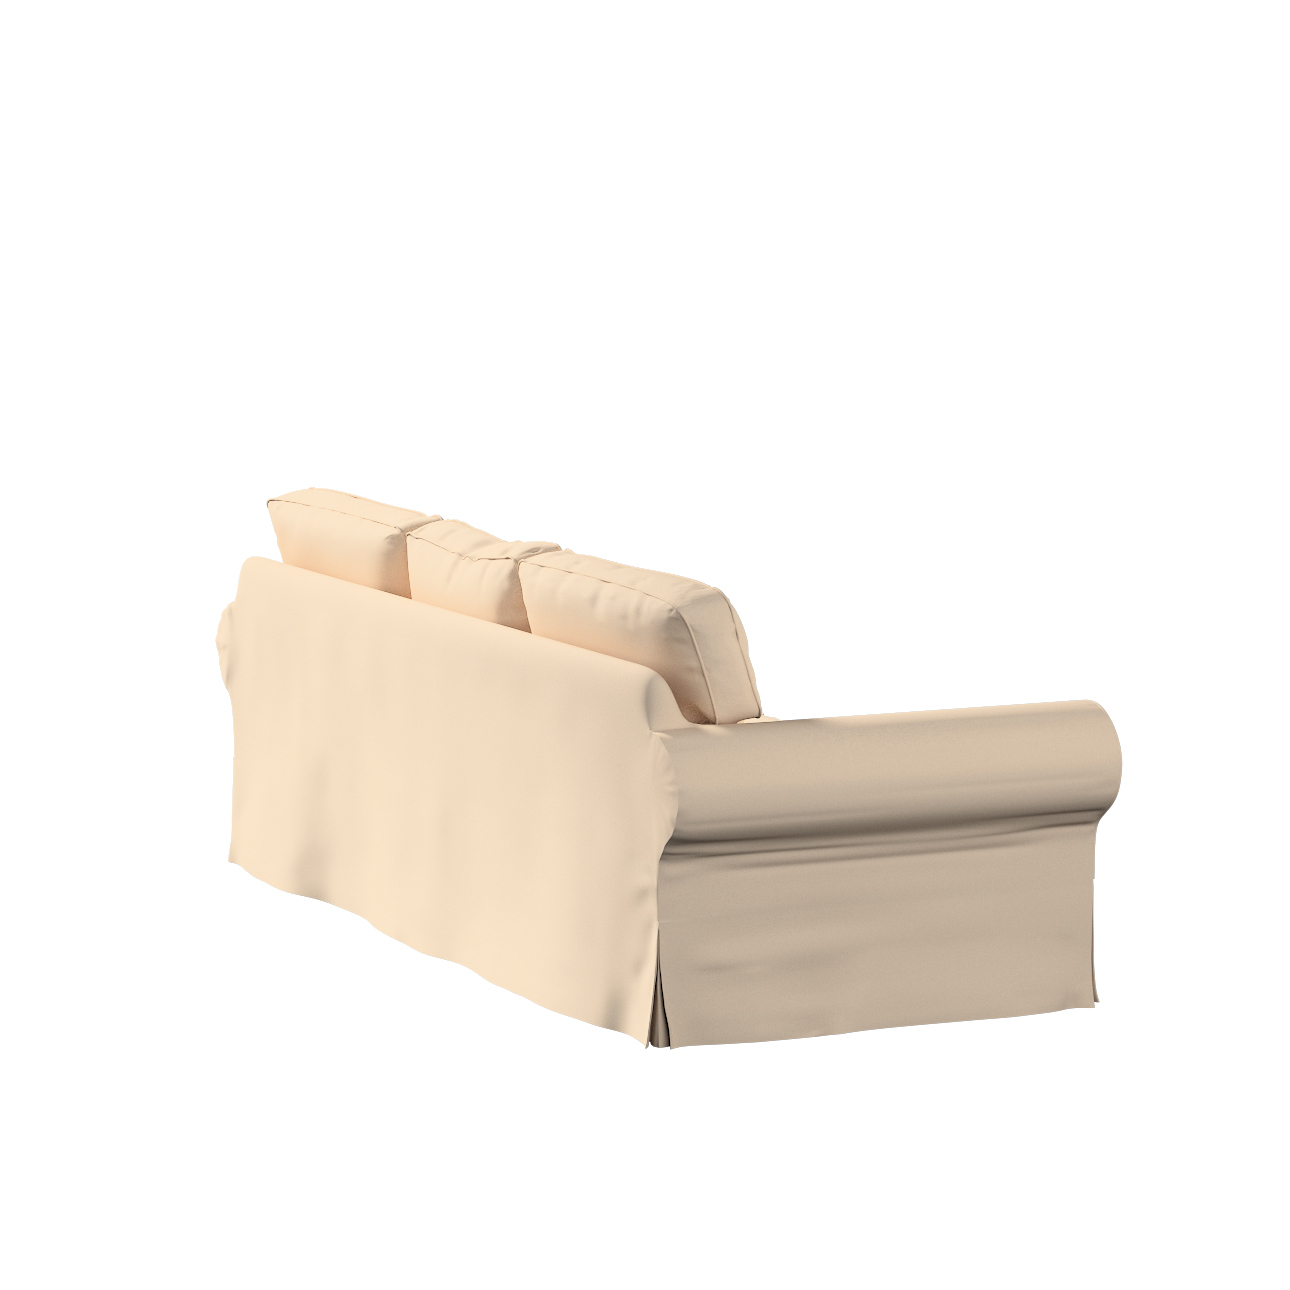 Bezug für Ektorp 3-Sitzer Schlafsofa, ALTES Modell, creme-beige, Sofahusse günstig online kaufen